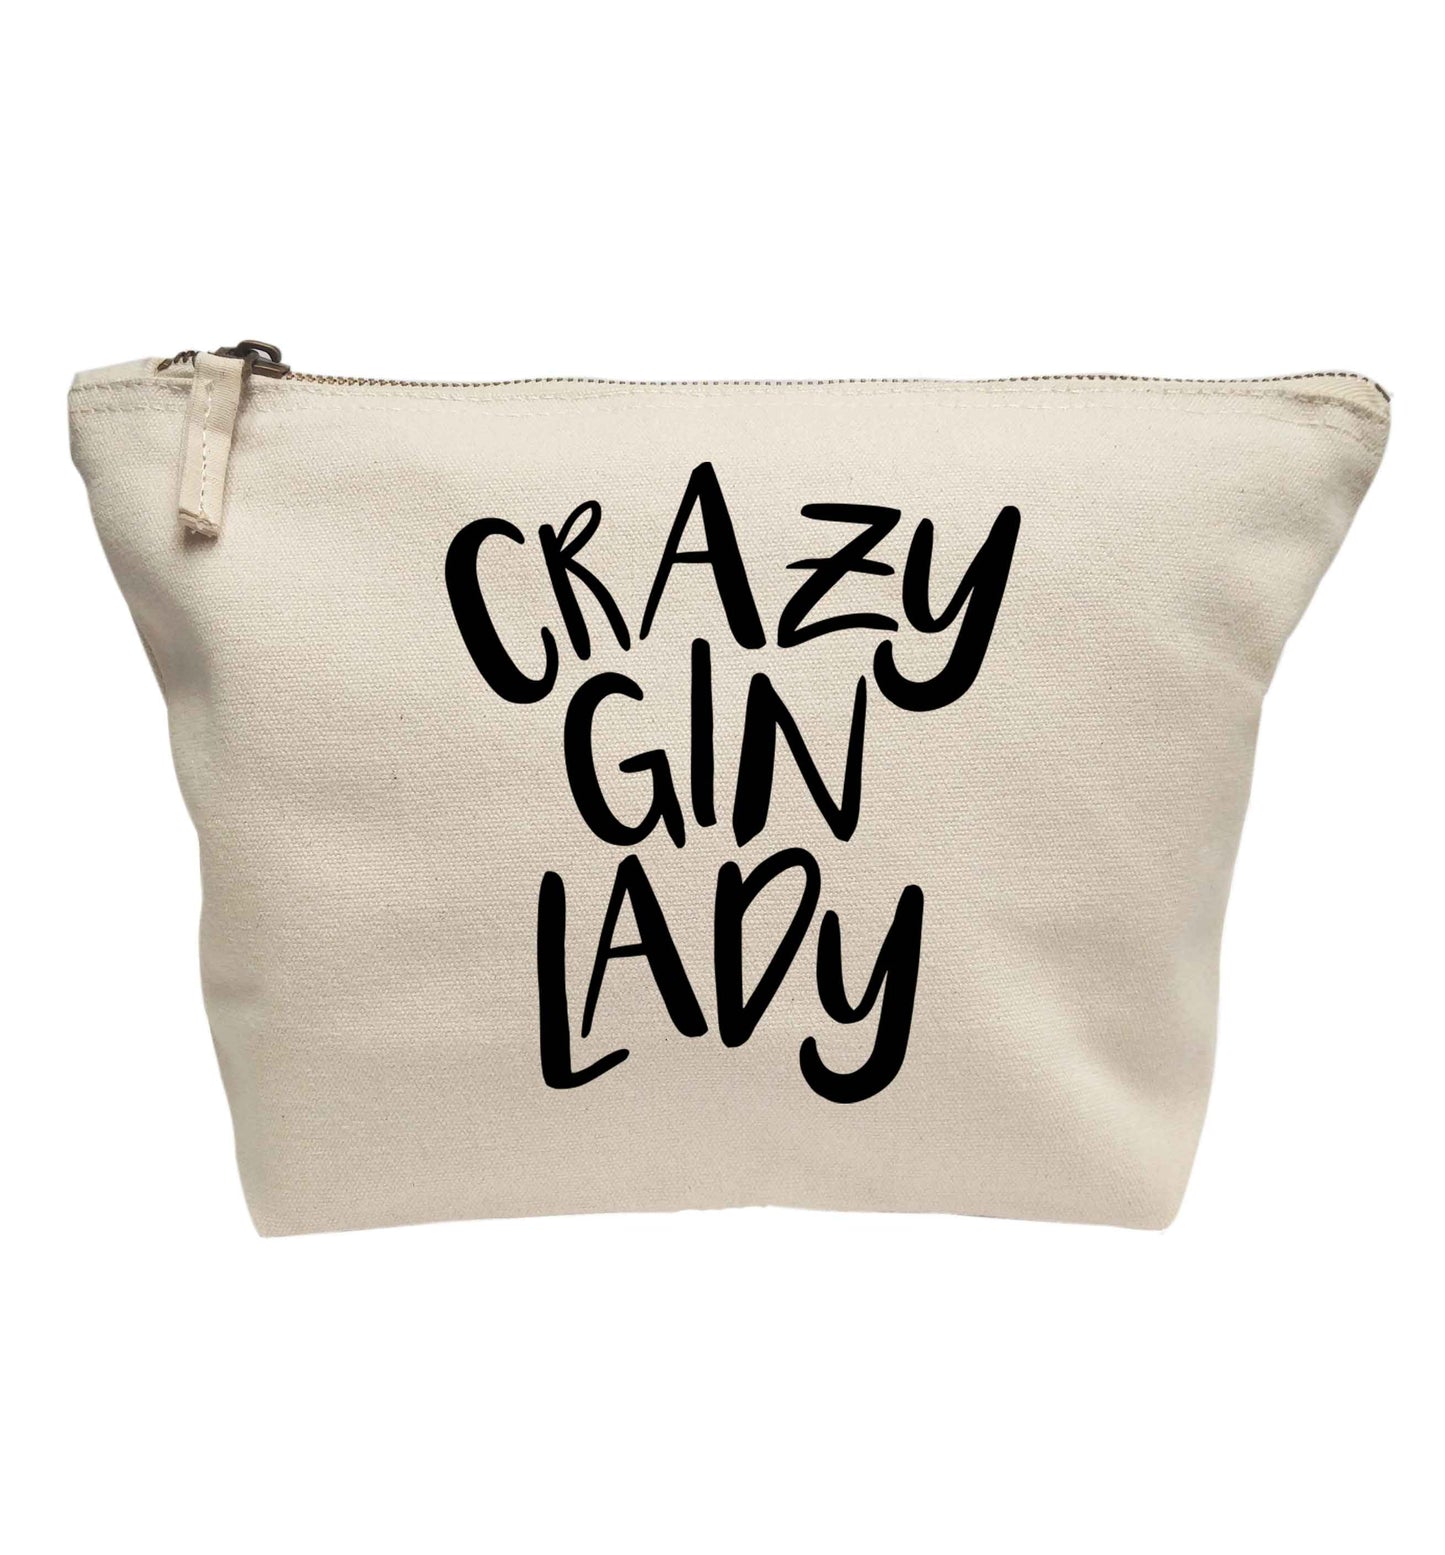 Crazy gin lady | makeup / wash bag